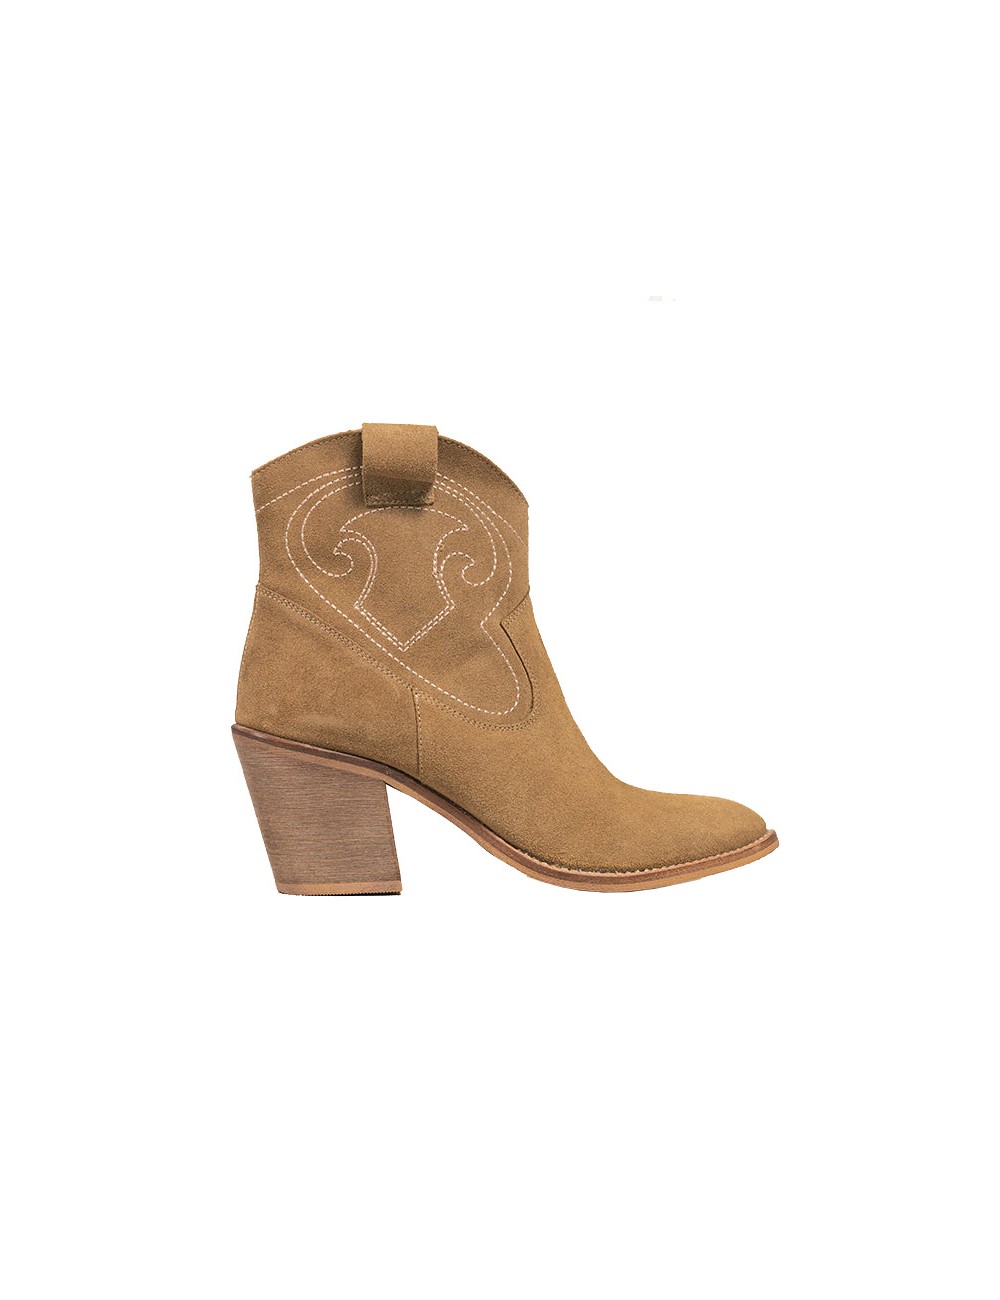 Bottines cowboy daim camel - Accessoires pour chaussures